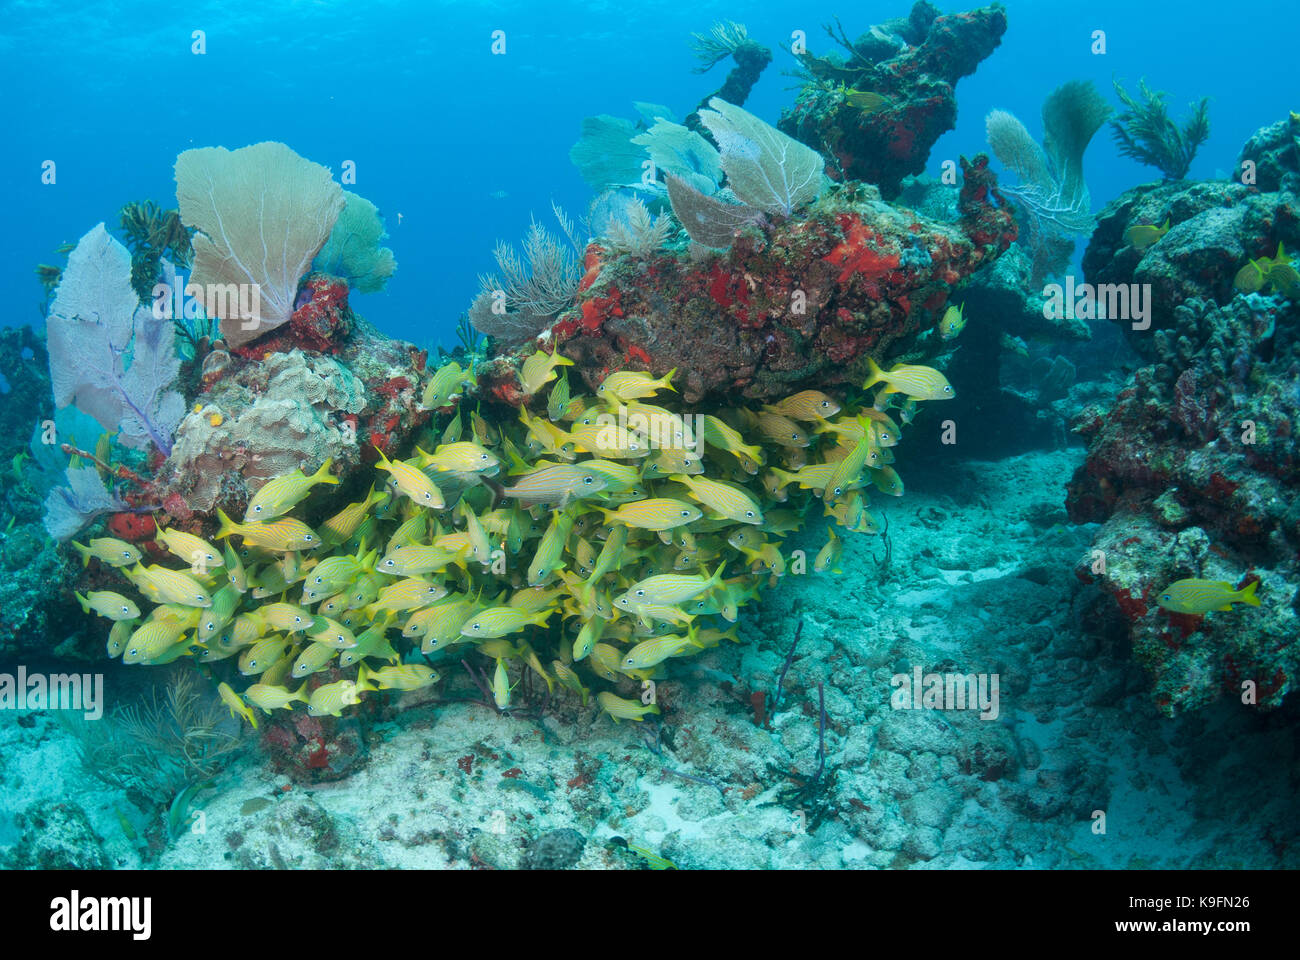 Tipico paesaggio sottomarino da una sana Coral reef in Puerto Morelos, Messico con una scuola di francese grunt pesci e coralli colorati. Foto Stock